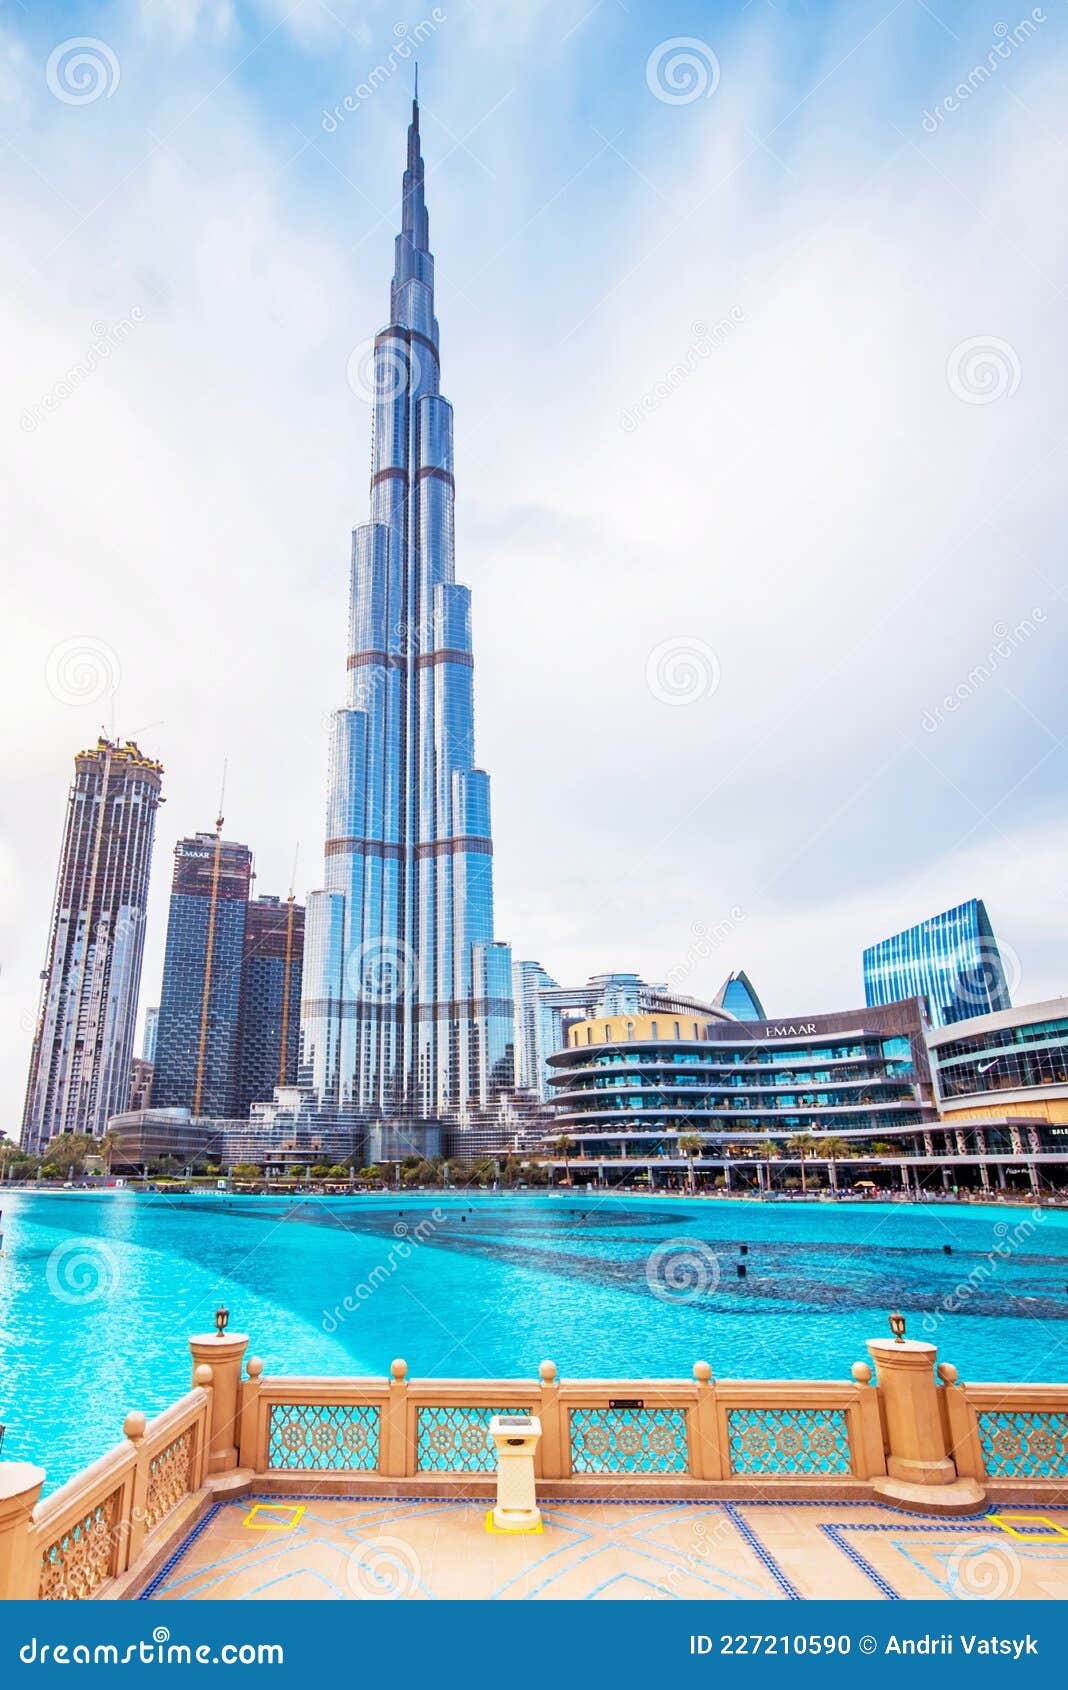 Burj Khalifa Images  Free Download on Freepik